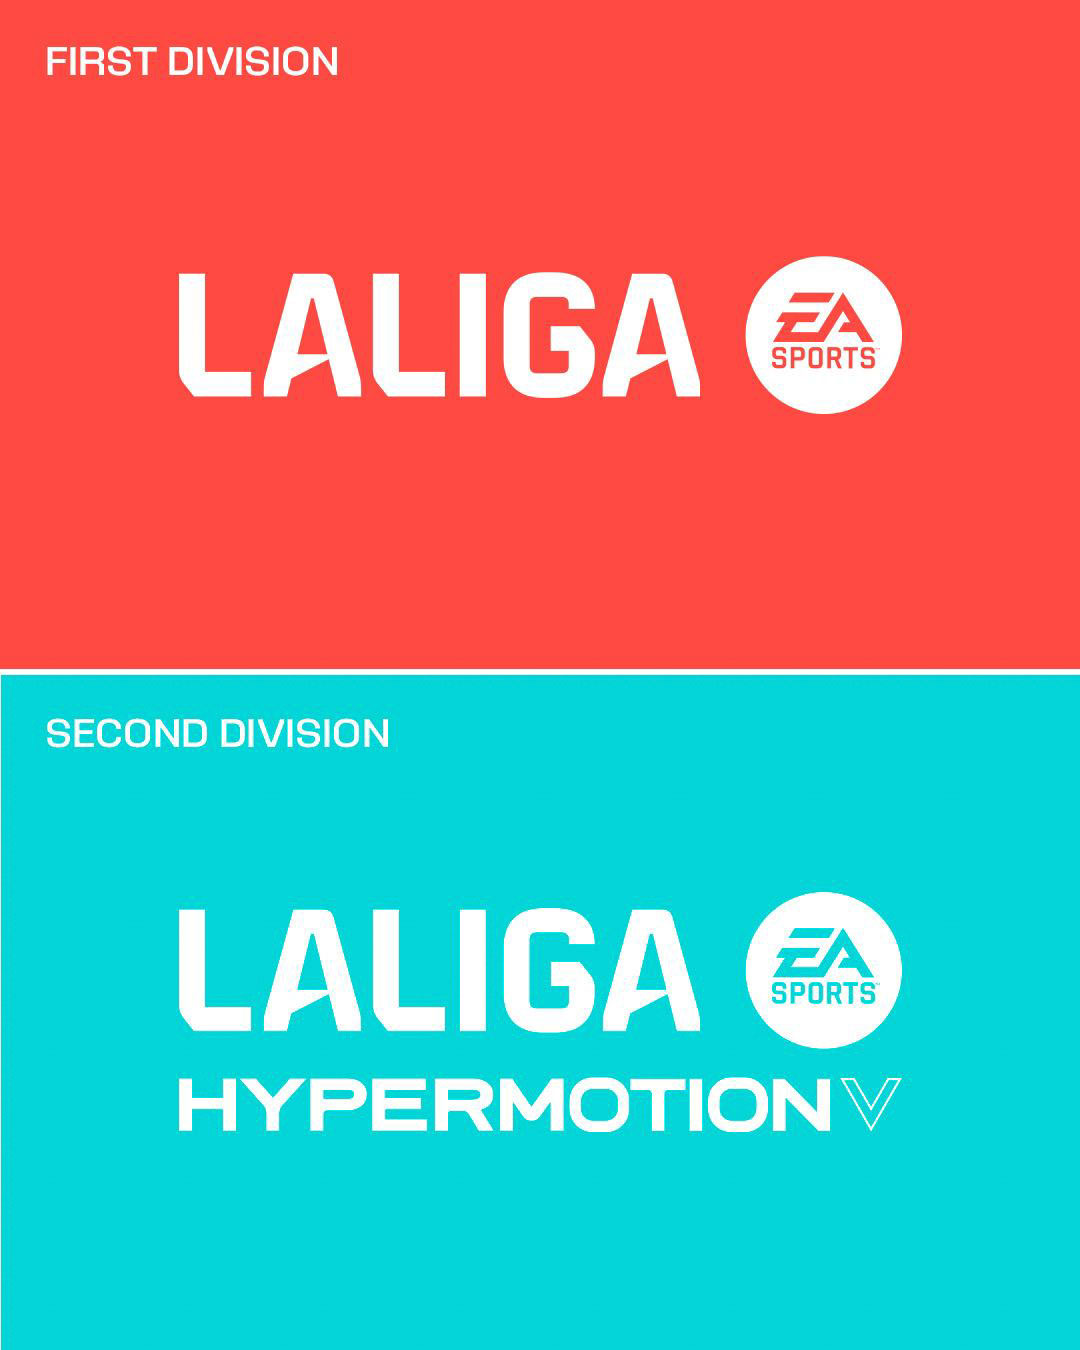 Así puedes coleccionar digitalmente los cromos oficiales de LaLiga EA Sports